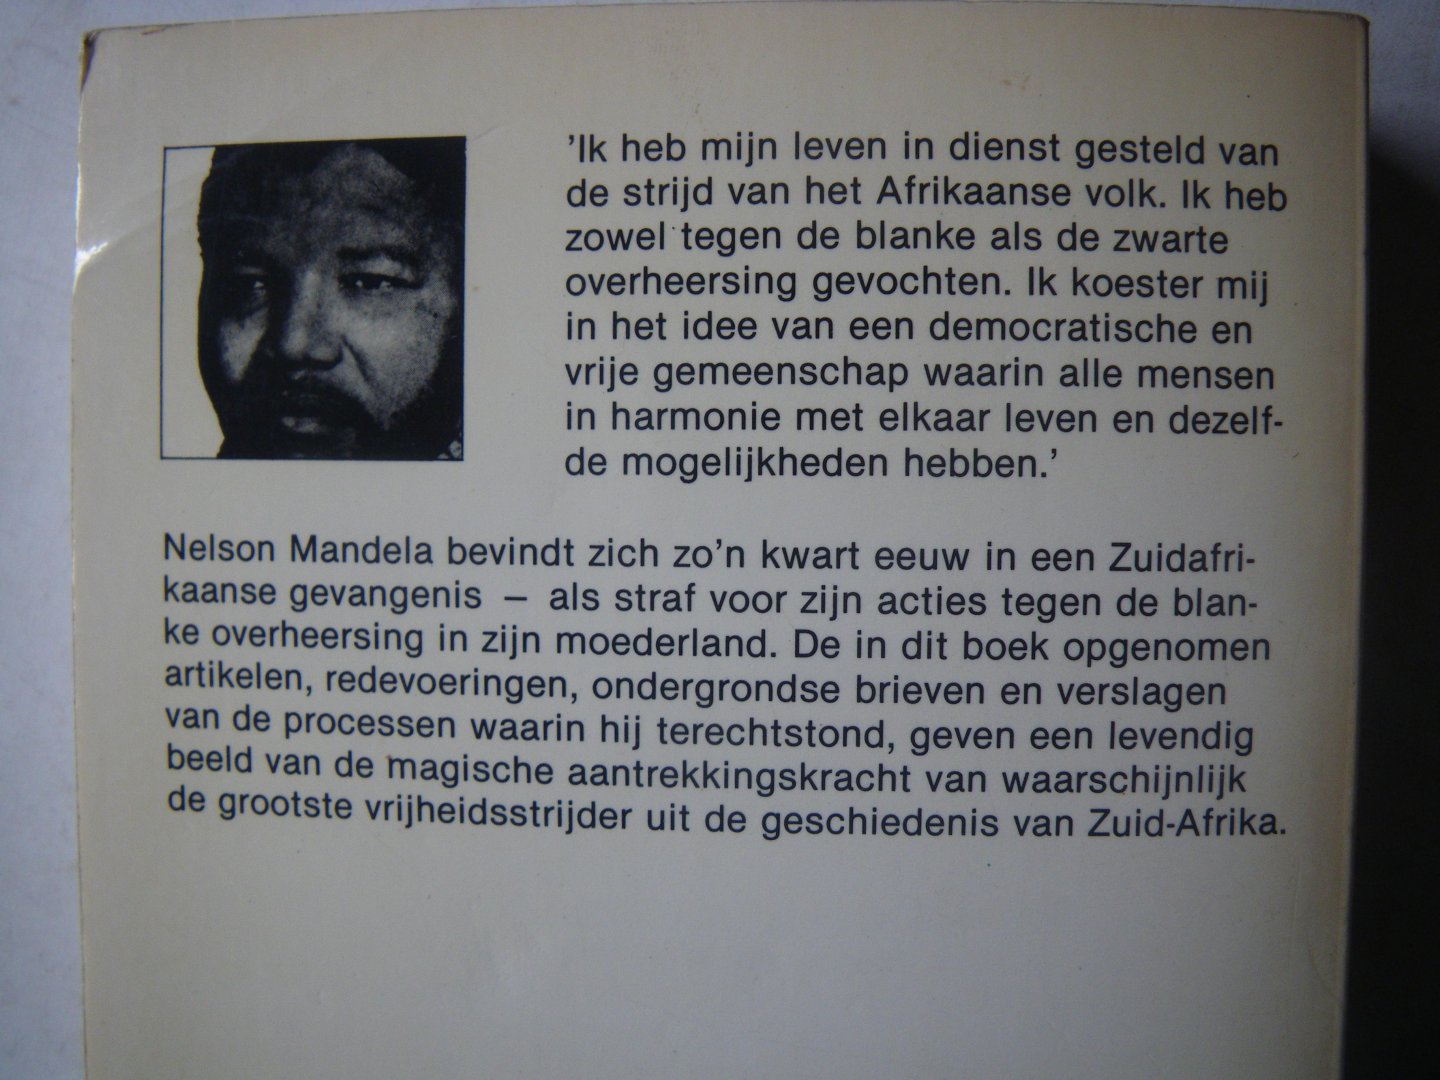 Mandela, Nelson, Vertaald door M.M. Duvivier. - De weg naar de vrijheid...